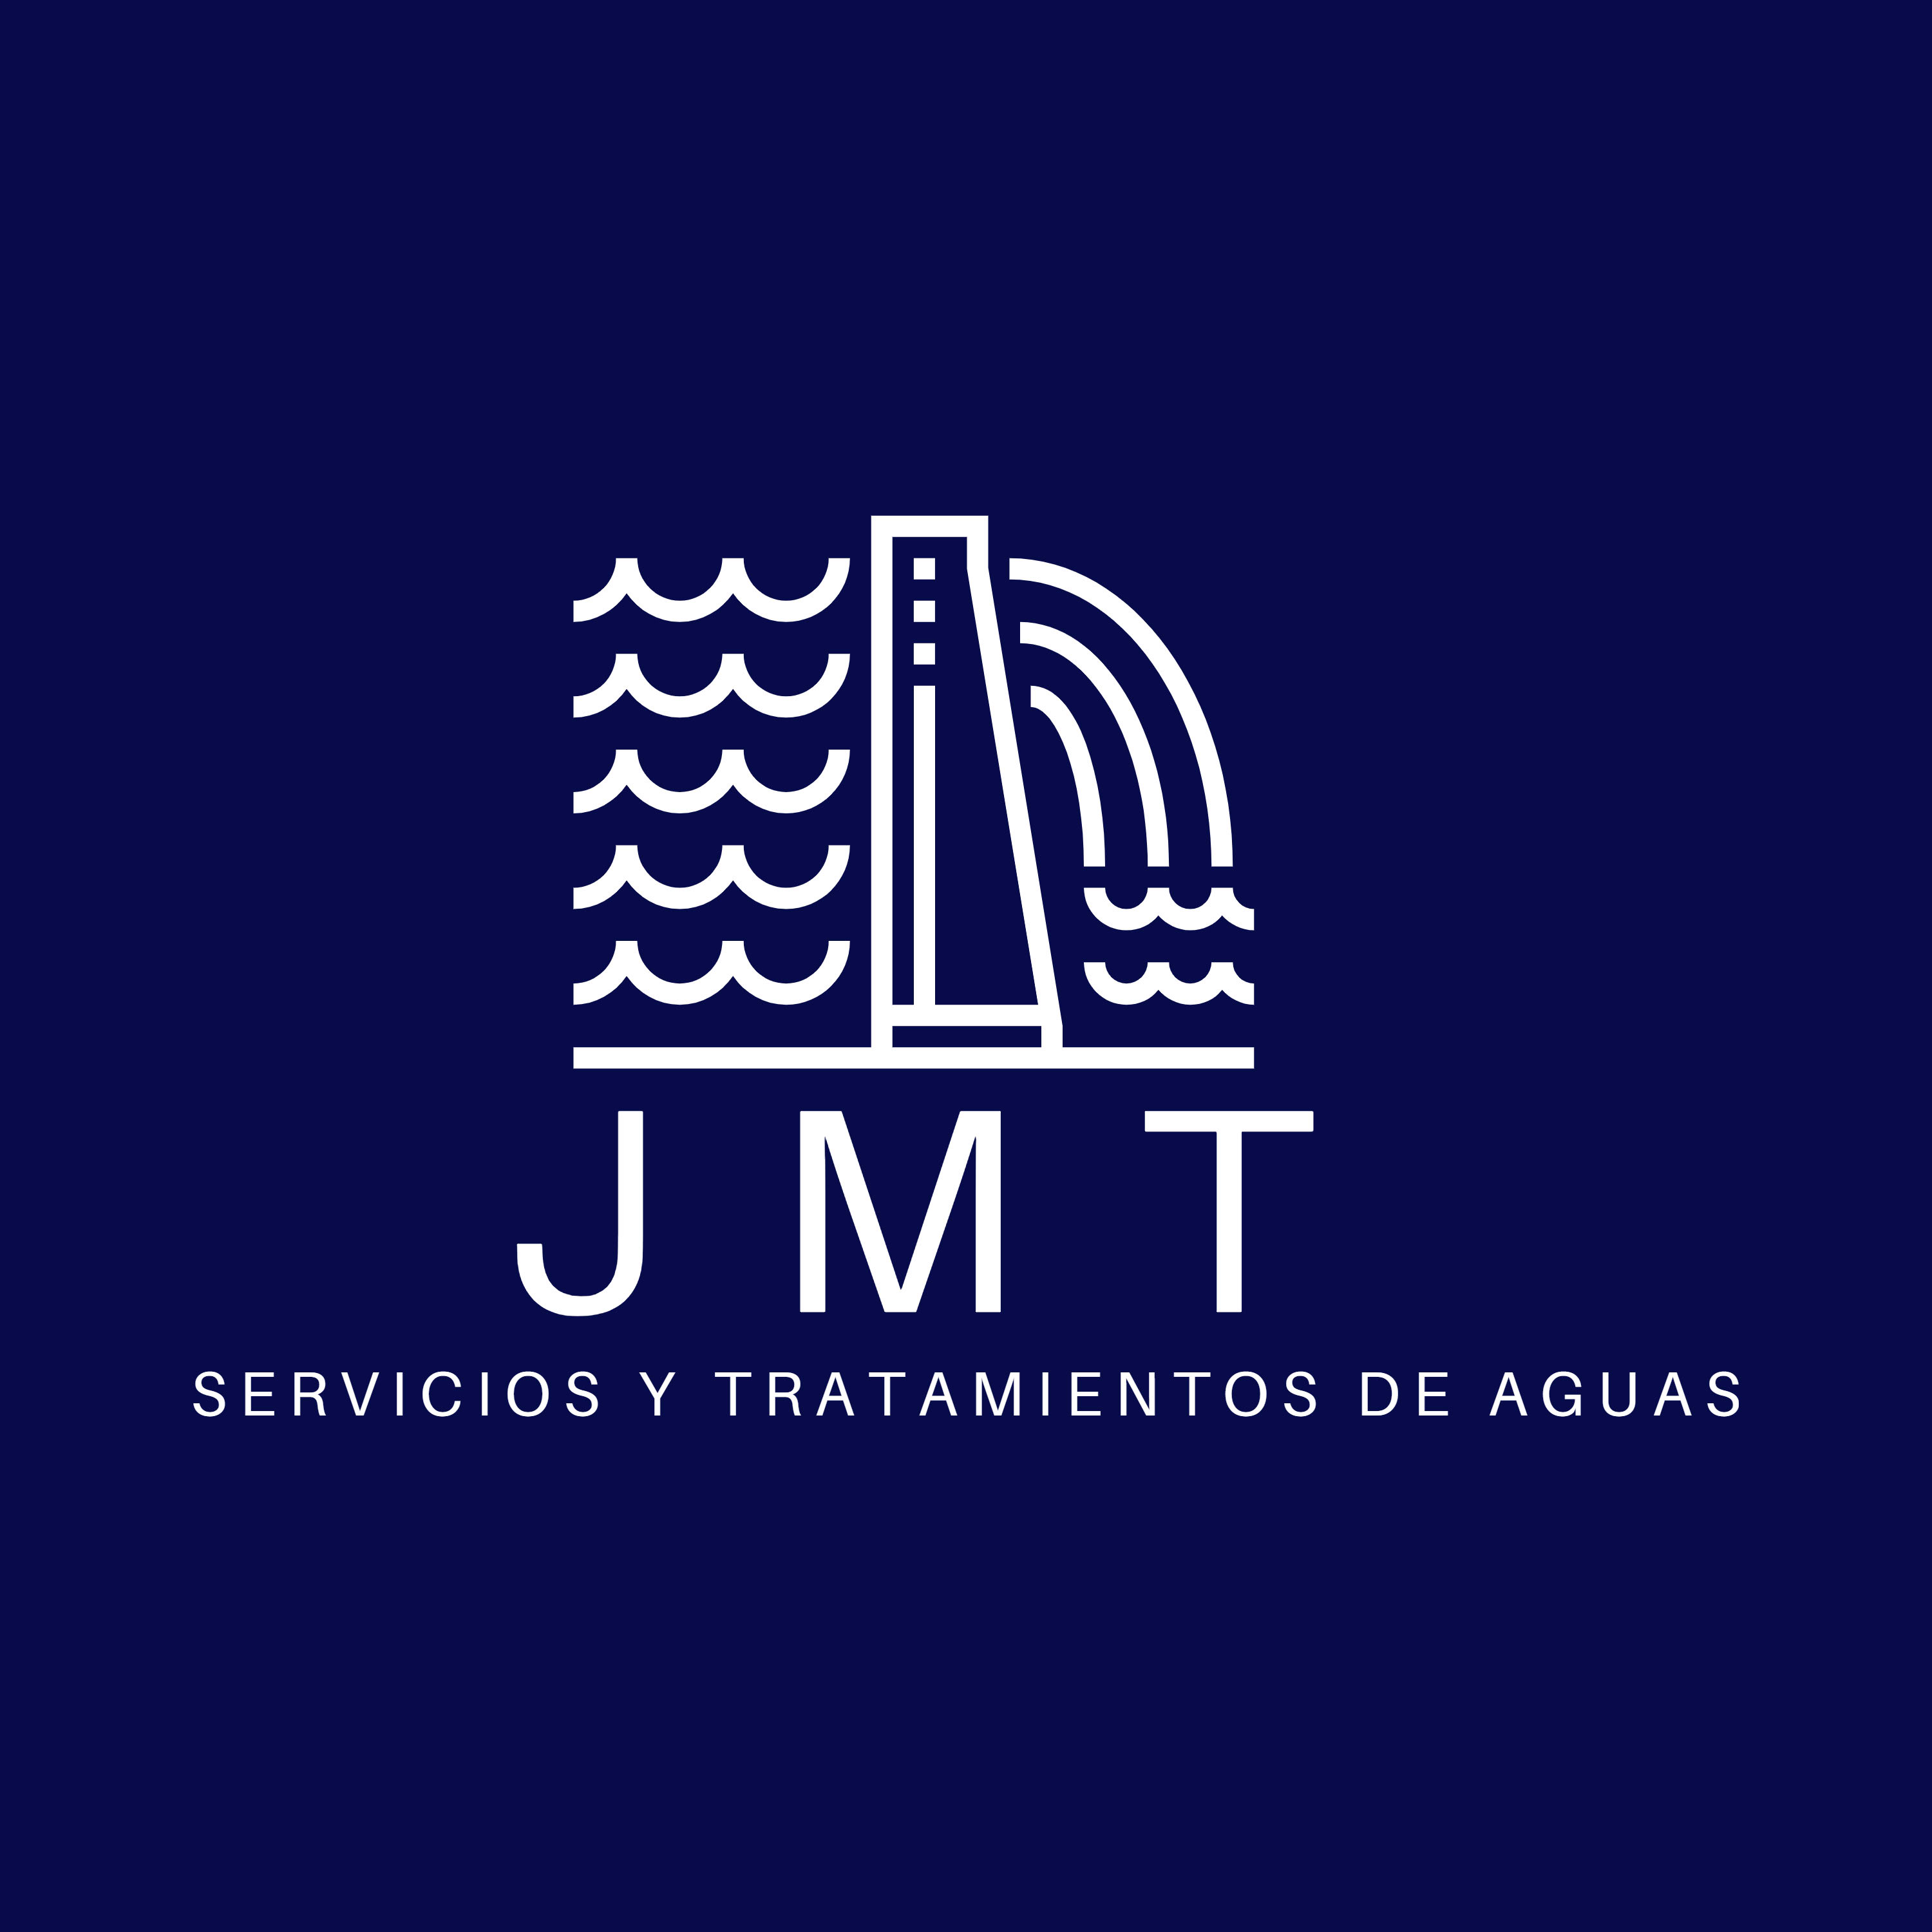 JMT SERVICIOS Y TRATAMIENTOS DE AGUAS